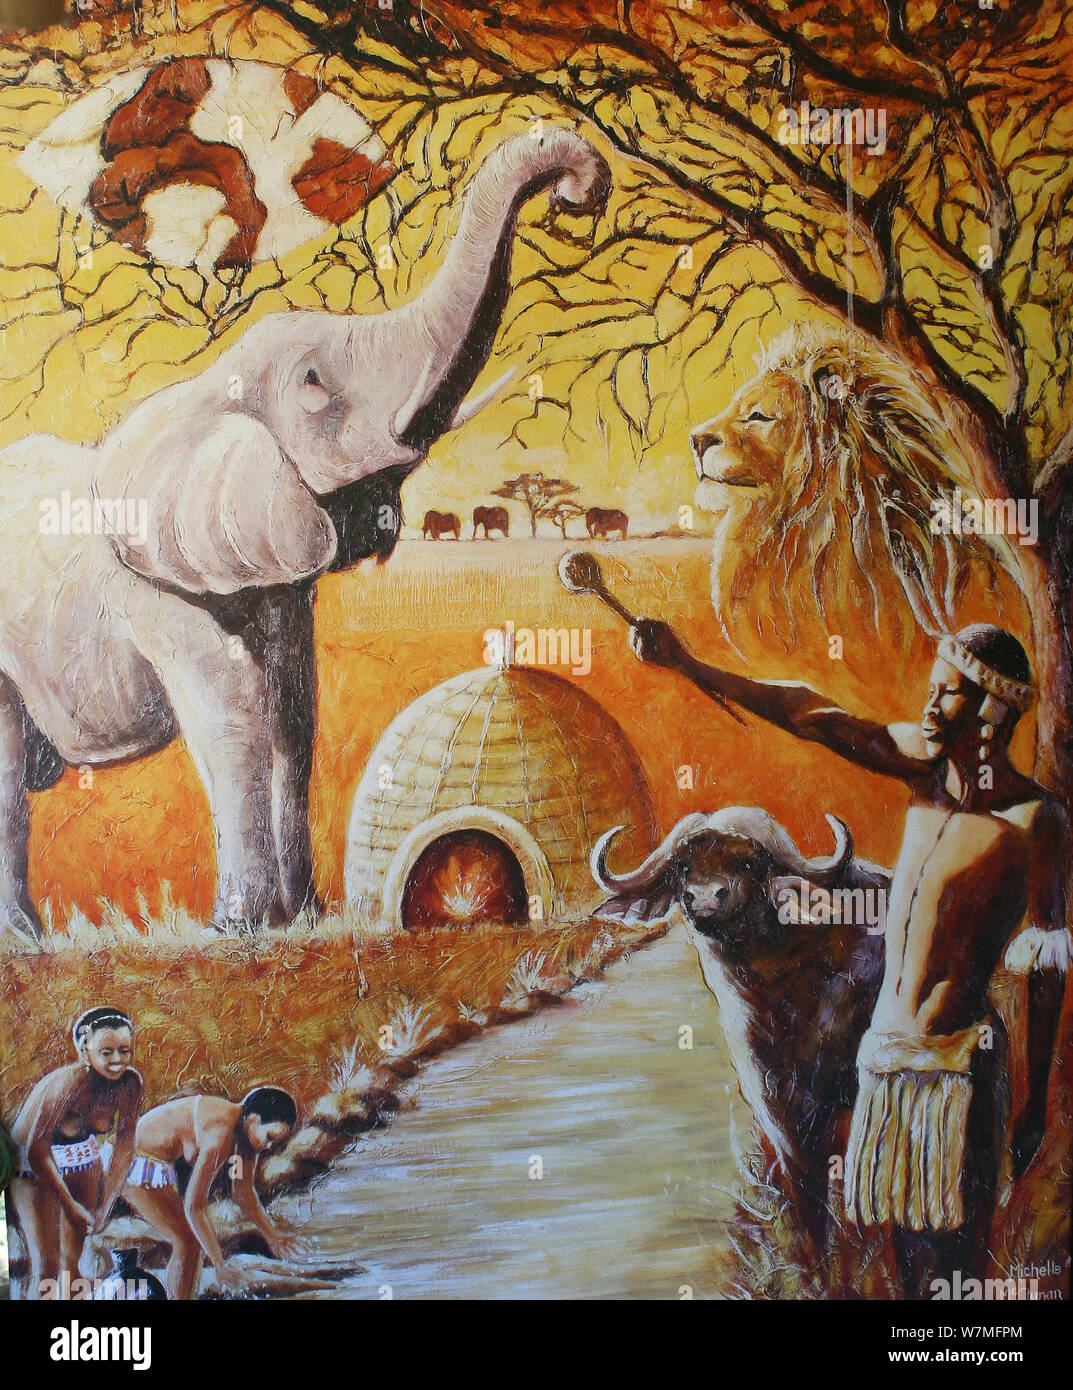 Tableau représentant la culture zoulou au Shakaland Zulu Cultural Village, Eshowe, Kwazulu Natal, Afrique du Sud Banque D'Images